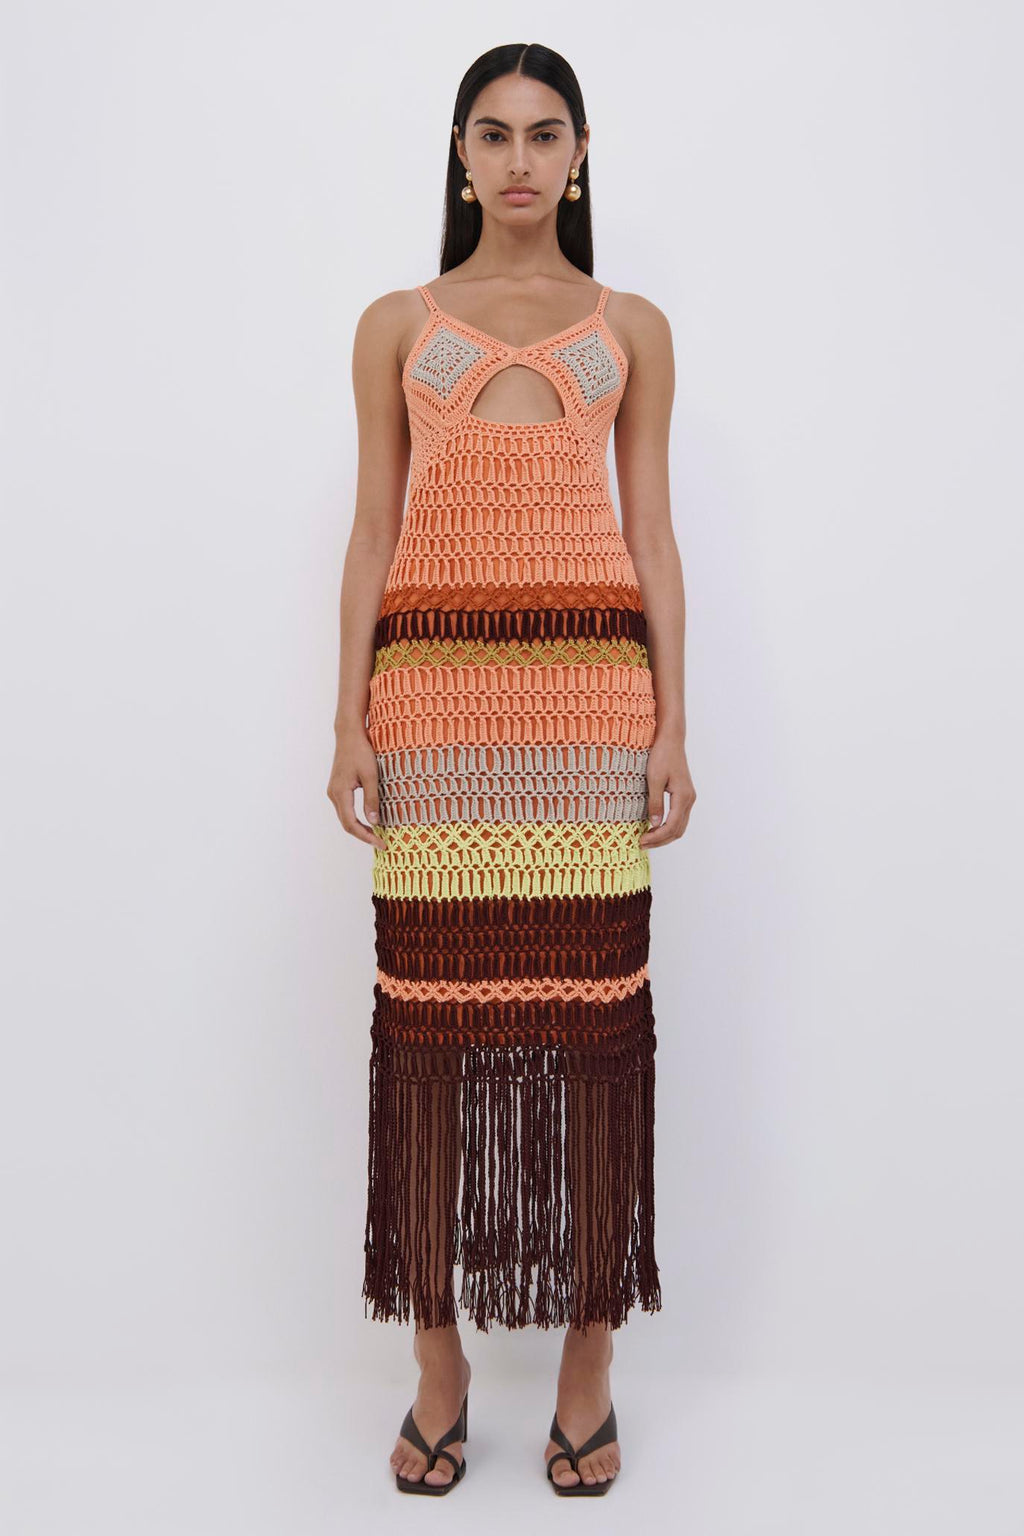 Marie Crochet Maxi Dress